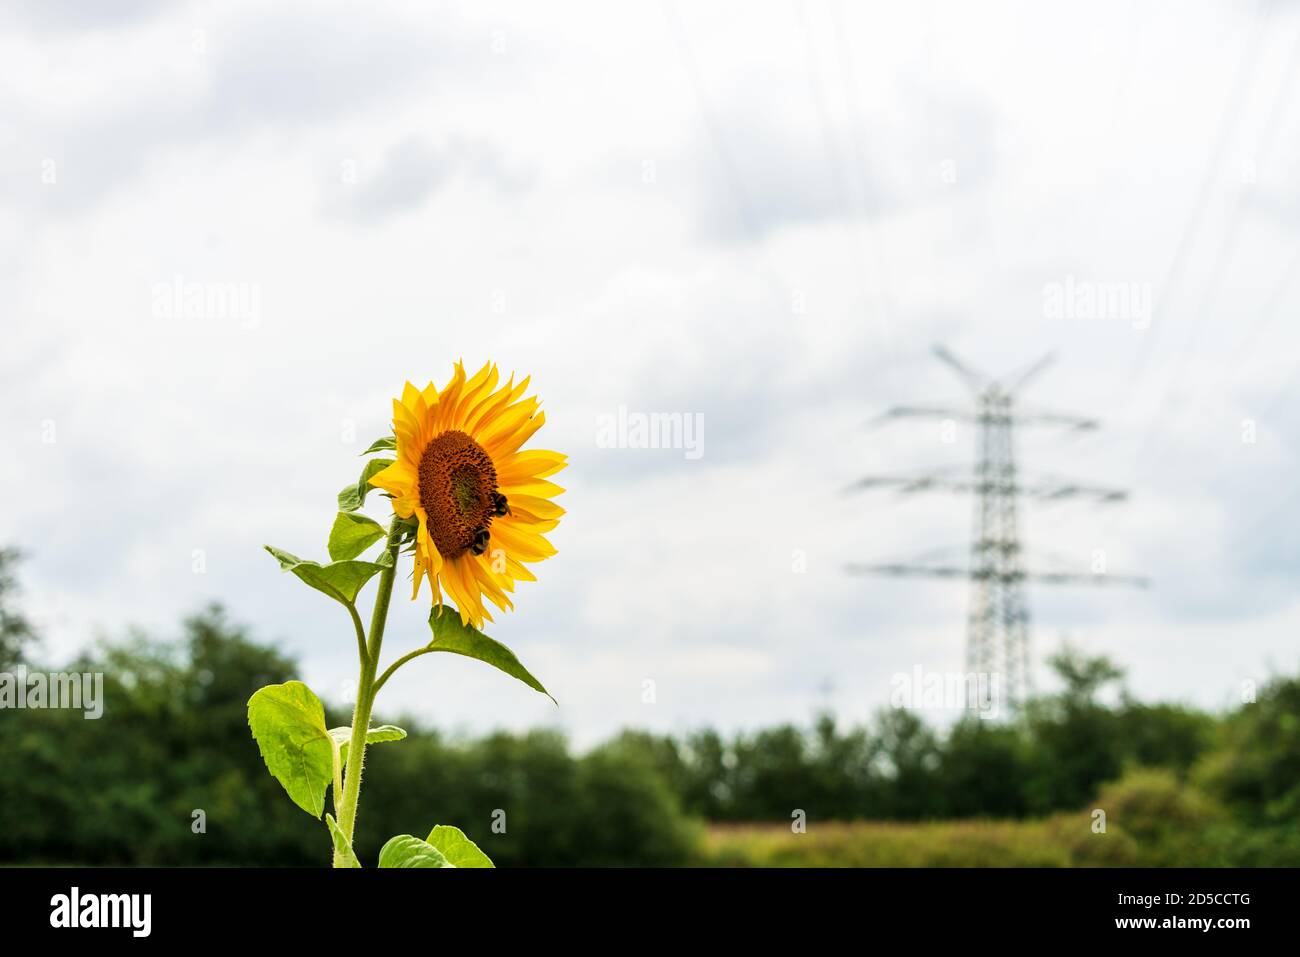 Die Sonnenblume mit Hummeln auf einer Wiese vor einem Hochspannungsmast als Symbol für den Schutz der Umwelt Banque D'Images